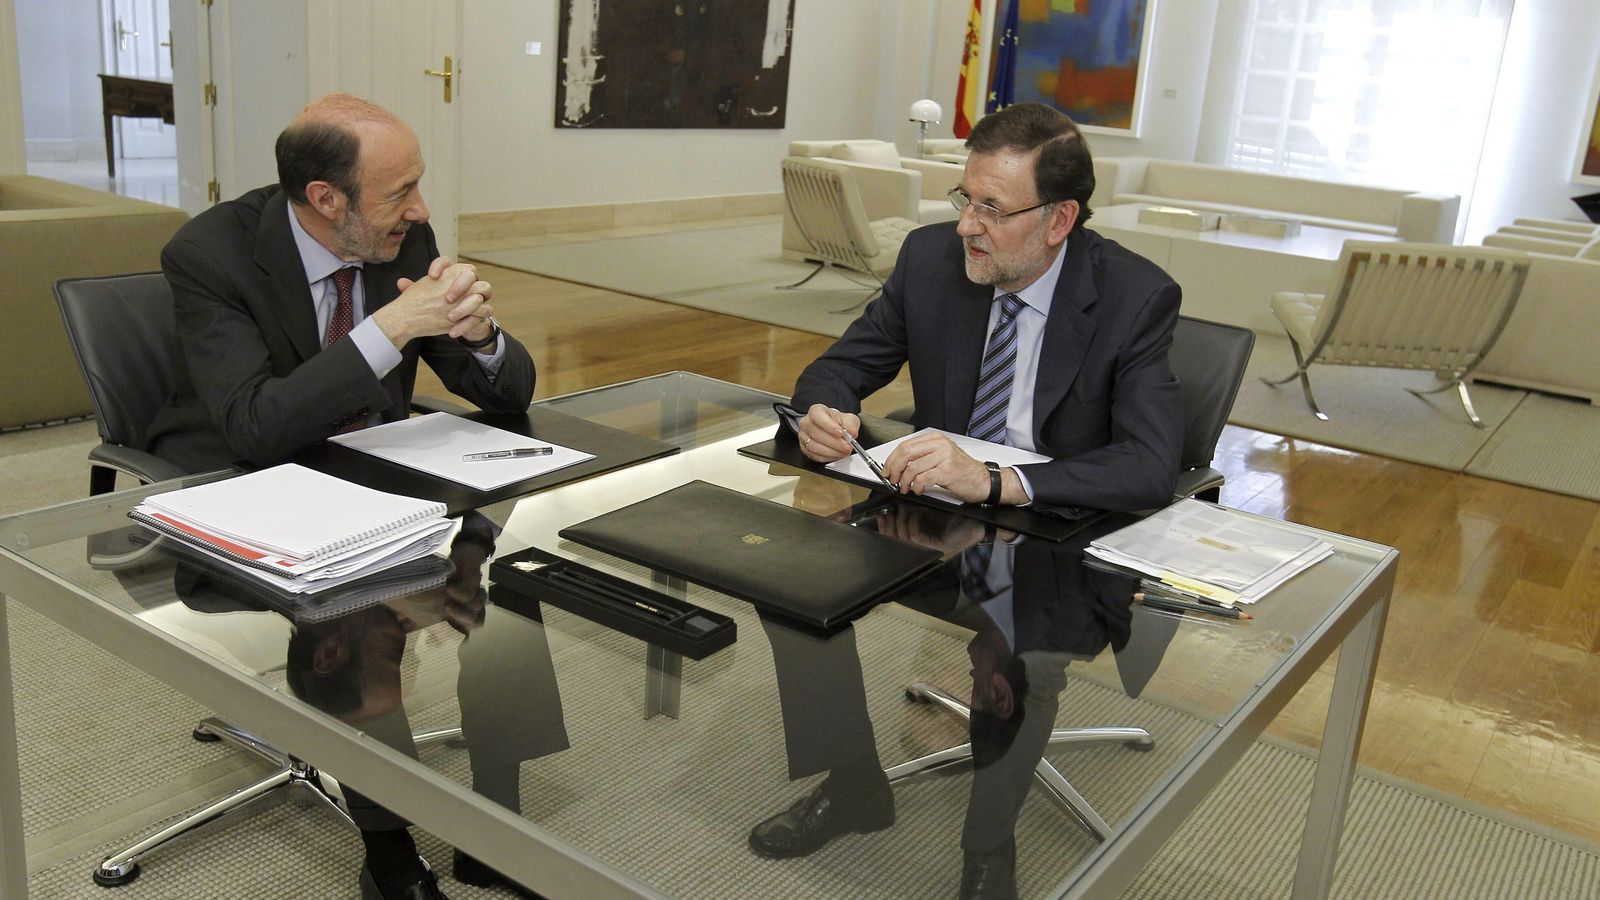 Foto: El presidente del Gobierno, Mariano Rajoy, con el exsecretario general del PSOE, Alfredo Pérez Rubalcaba, en una imagen de archivo. (Efe)